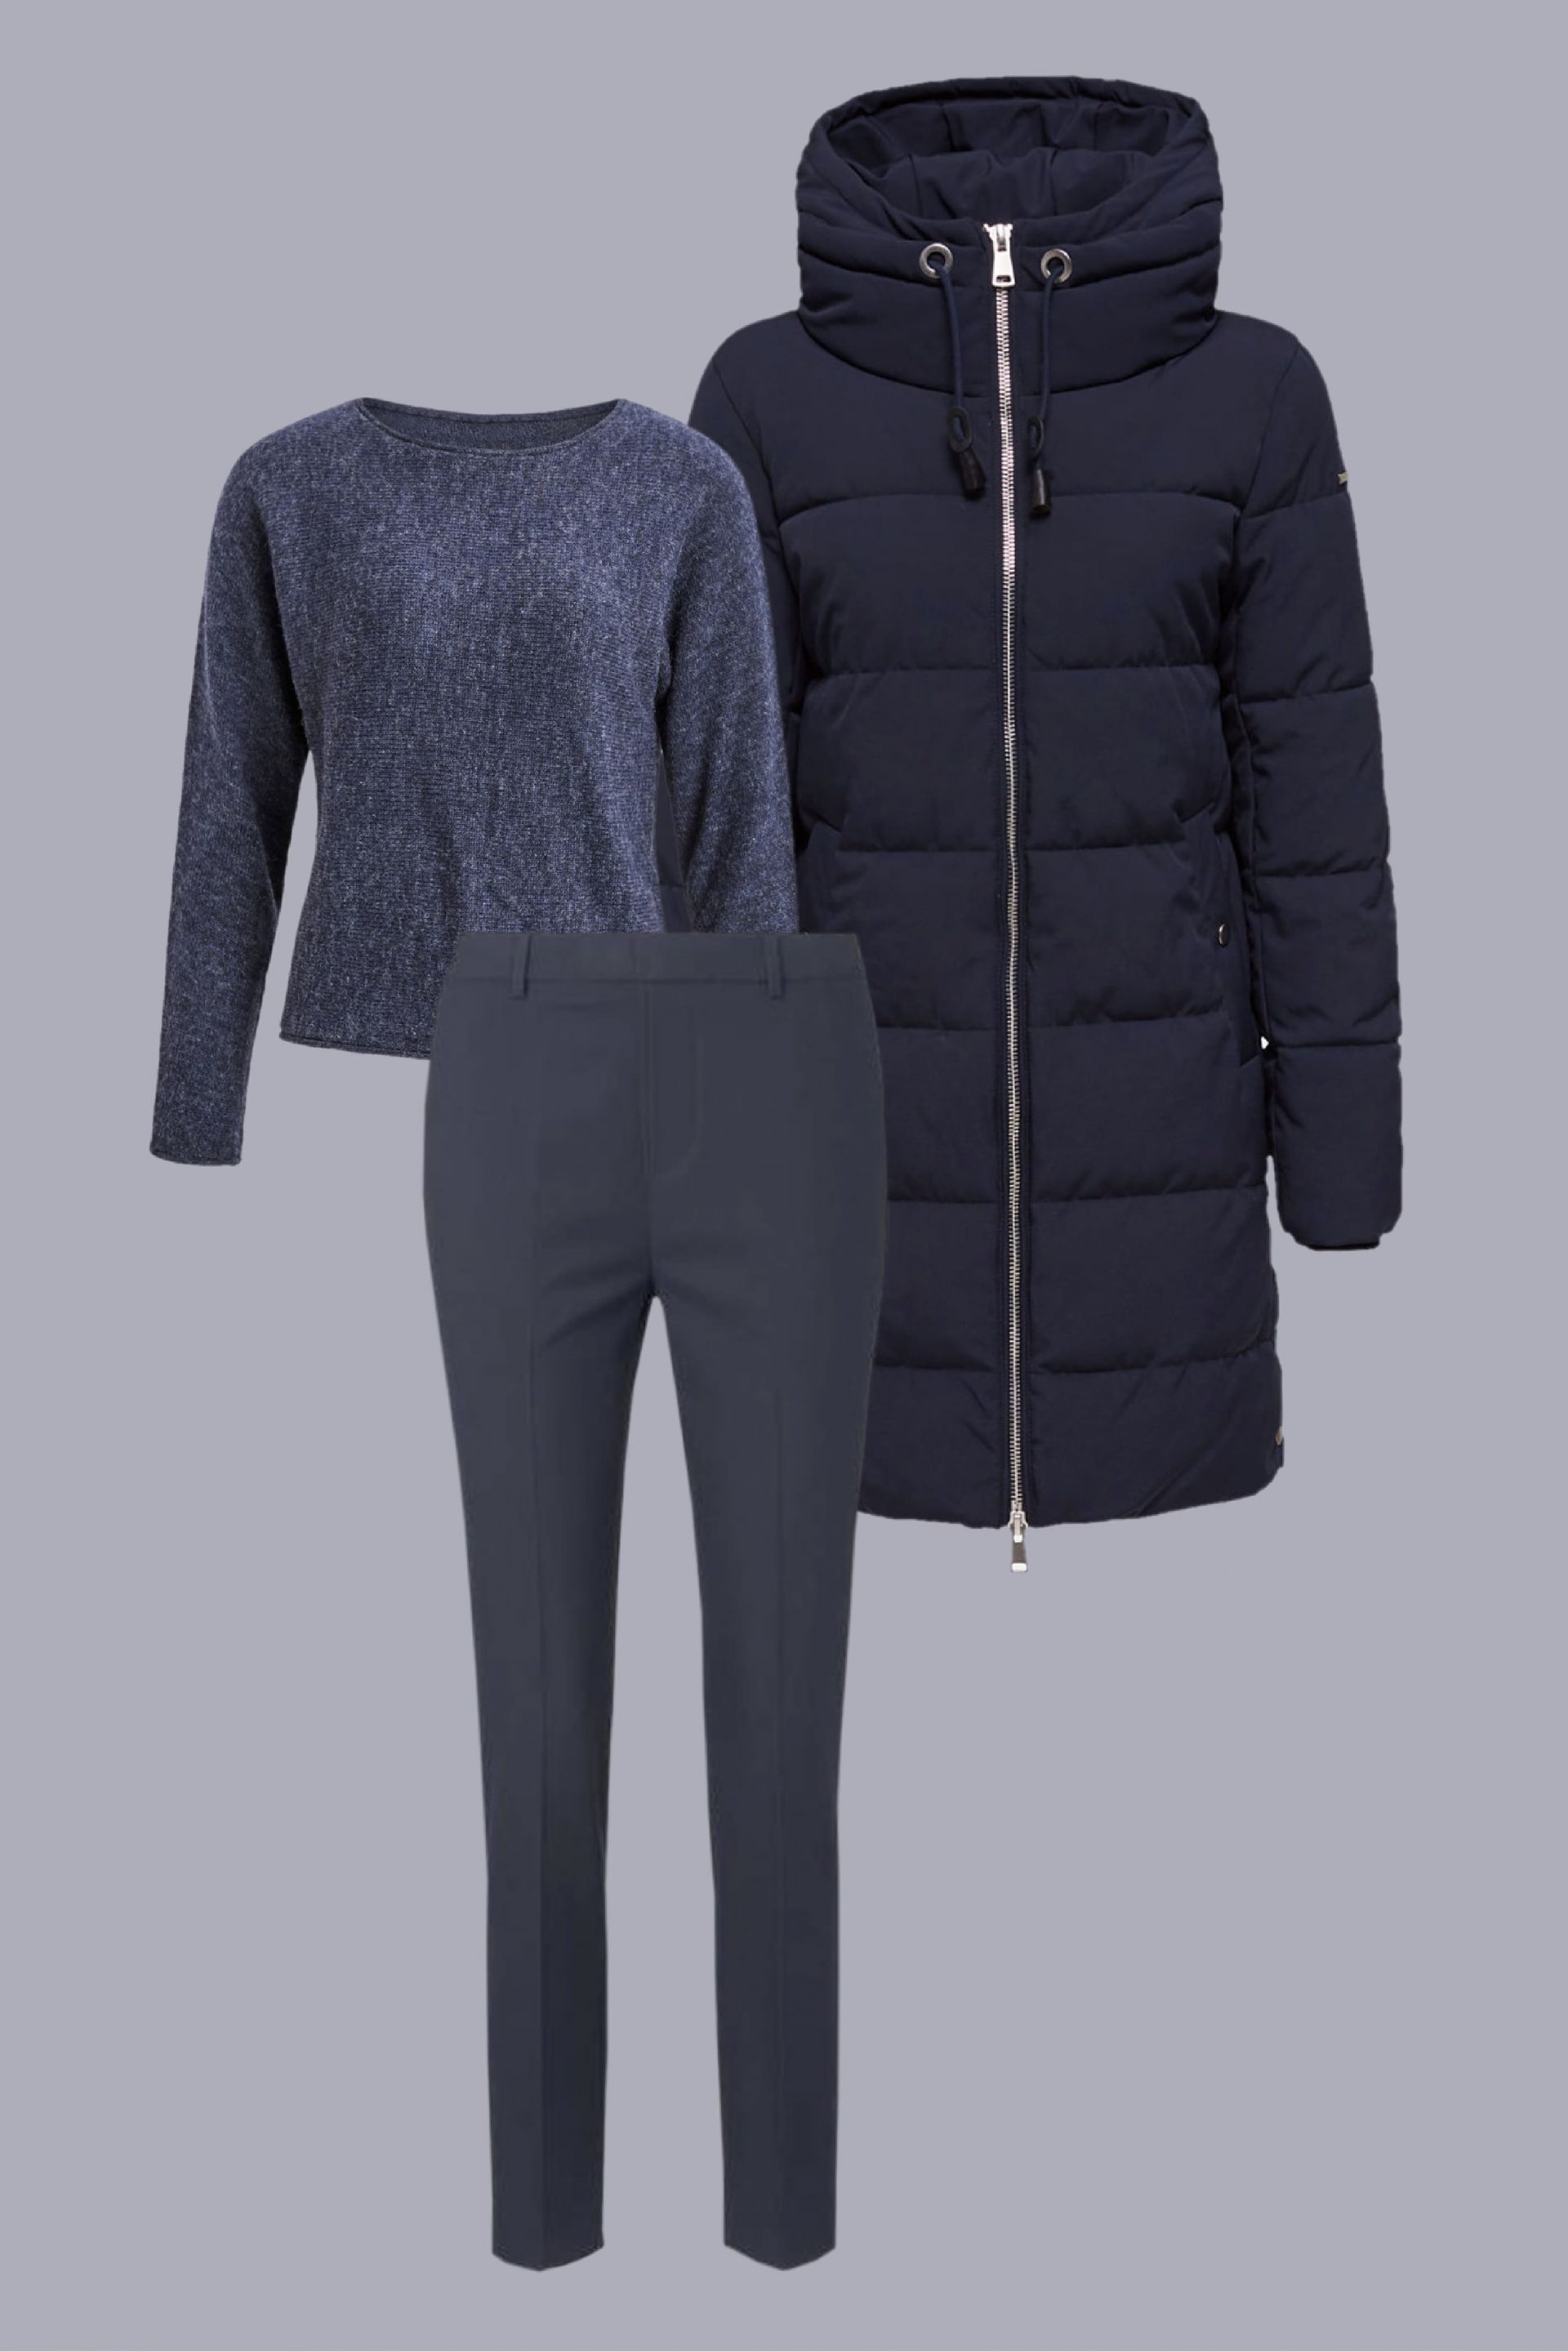 Look minimalista com casaco de plumas em azul marinho